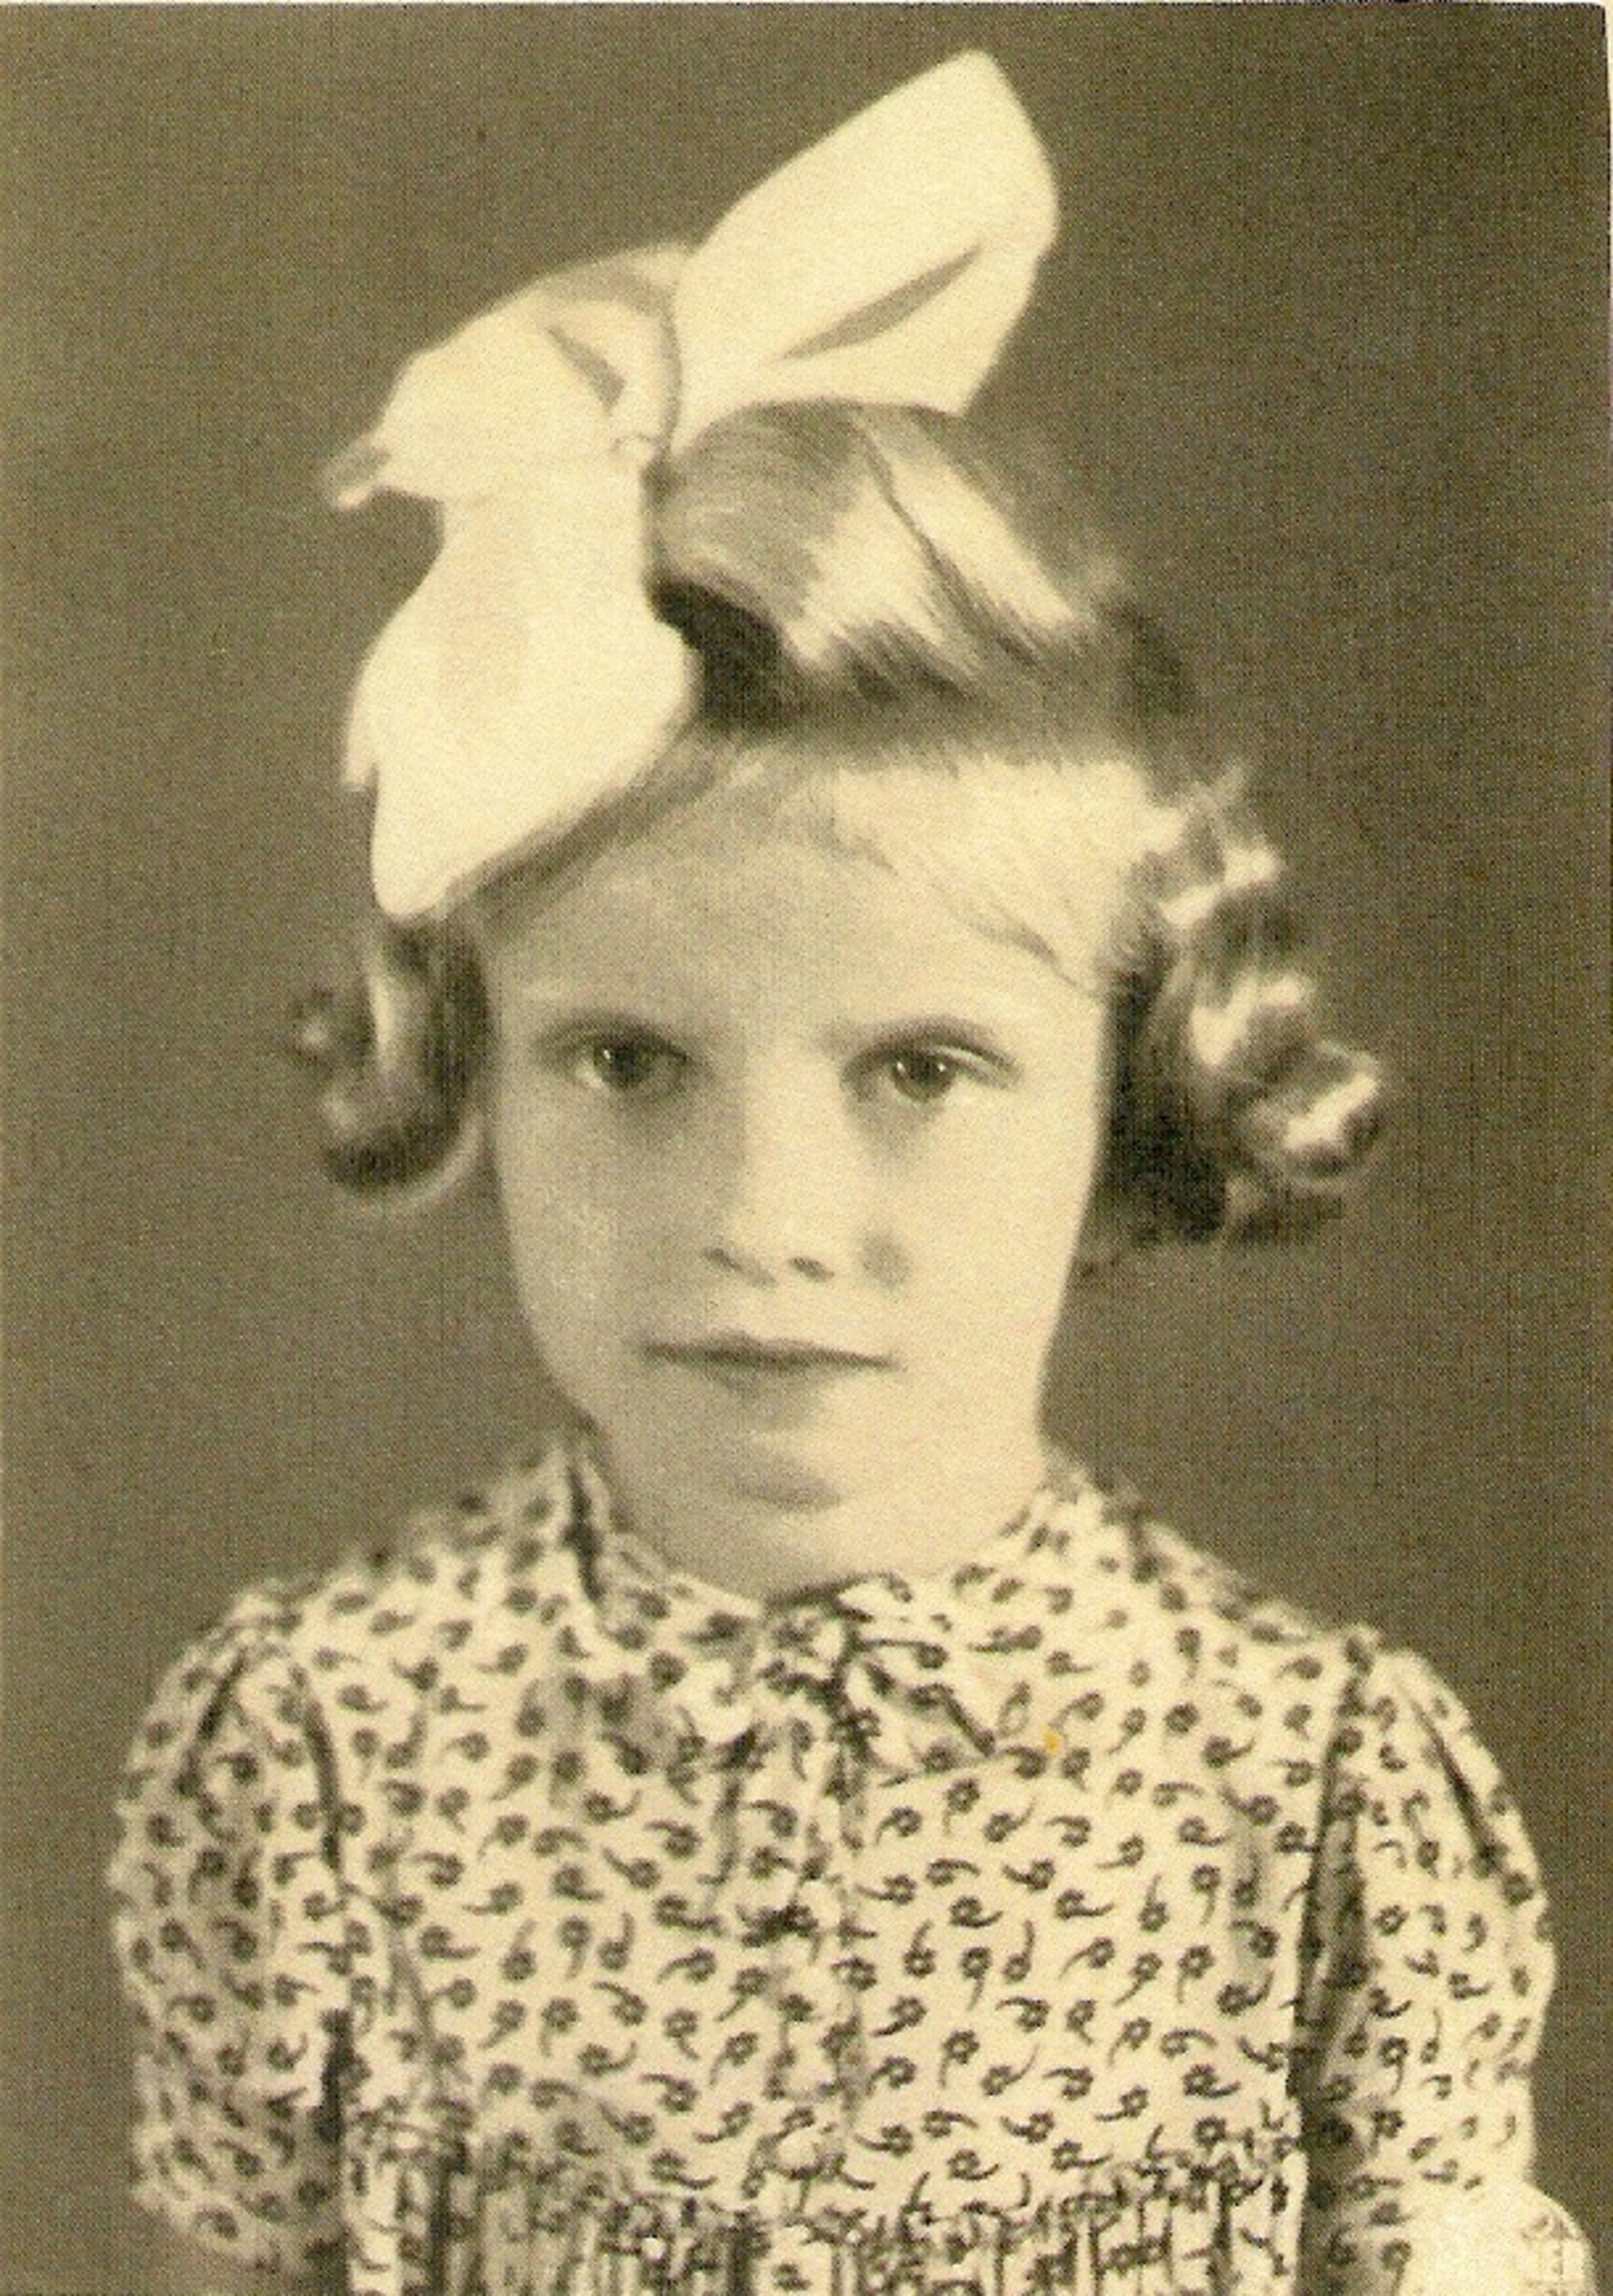 Jana Adášková - Volfová - in time of school